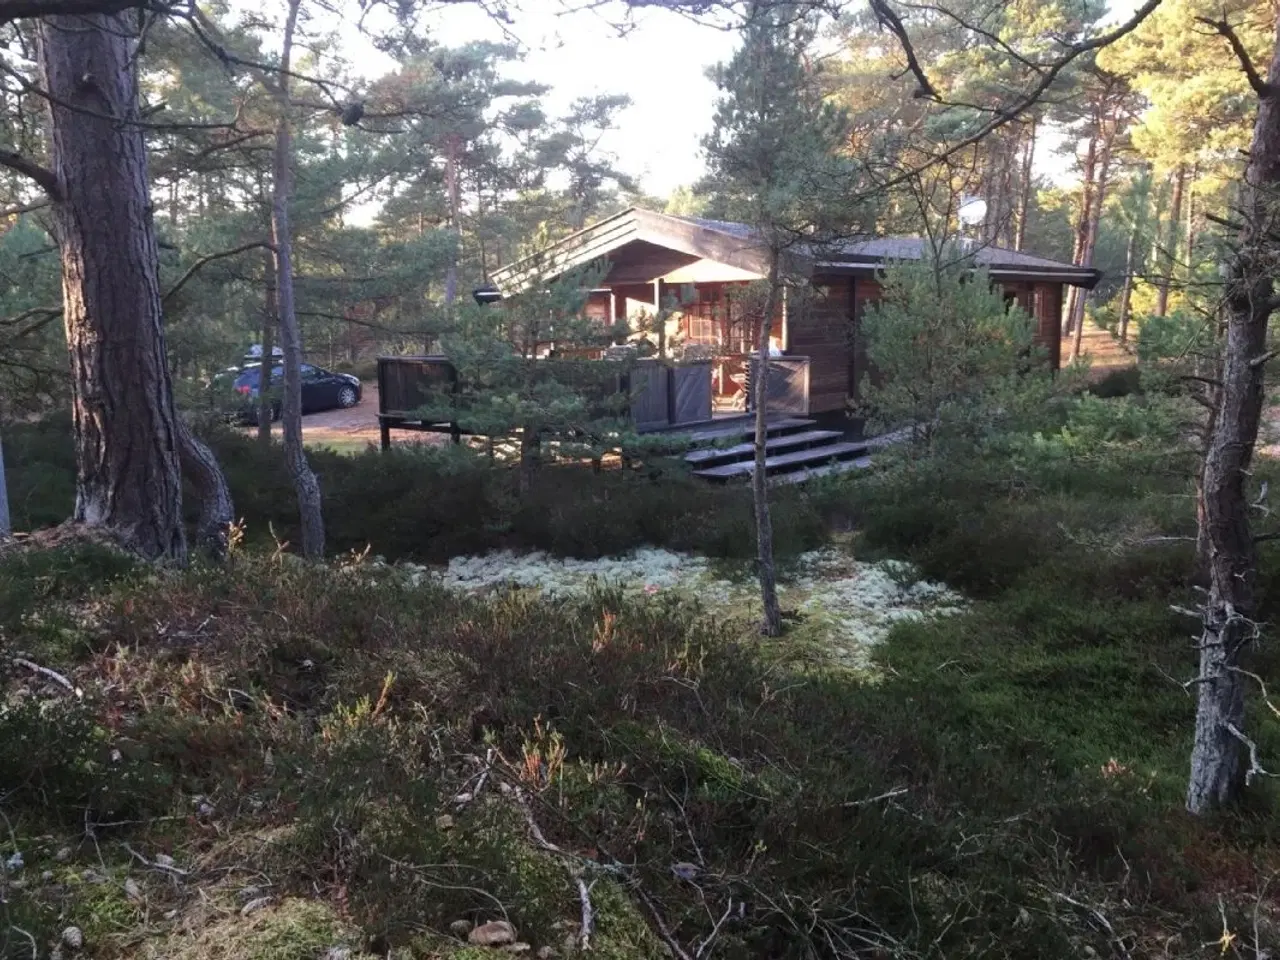 Billede 2 - Sommerhus på Dueodde, i rolige, naturskønne omgivelser nær dejlig badestrand.